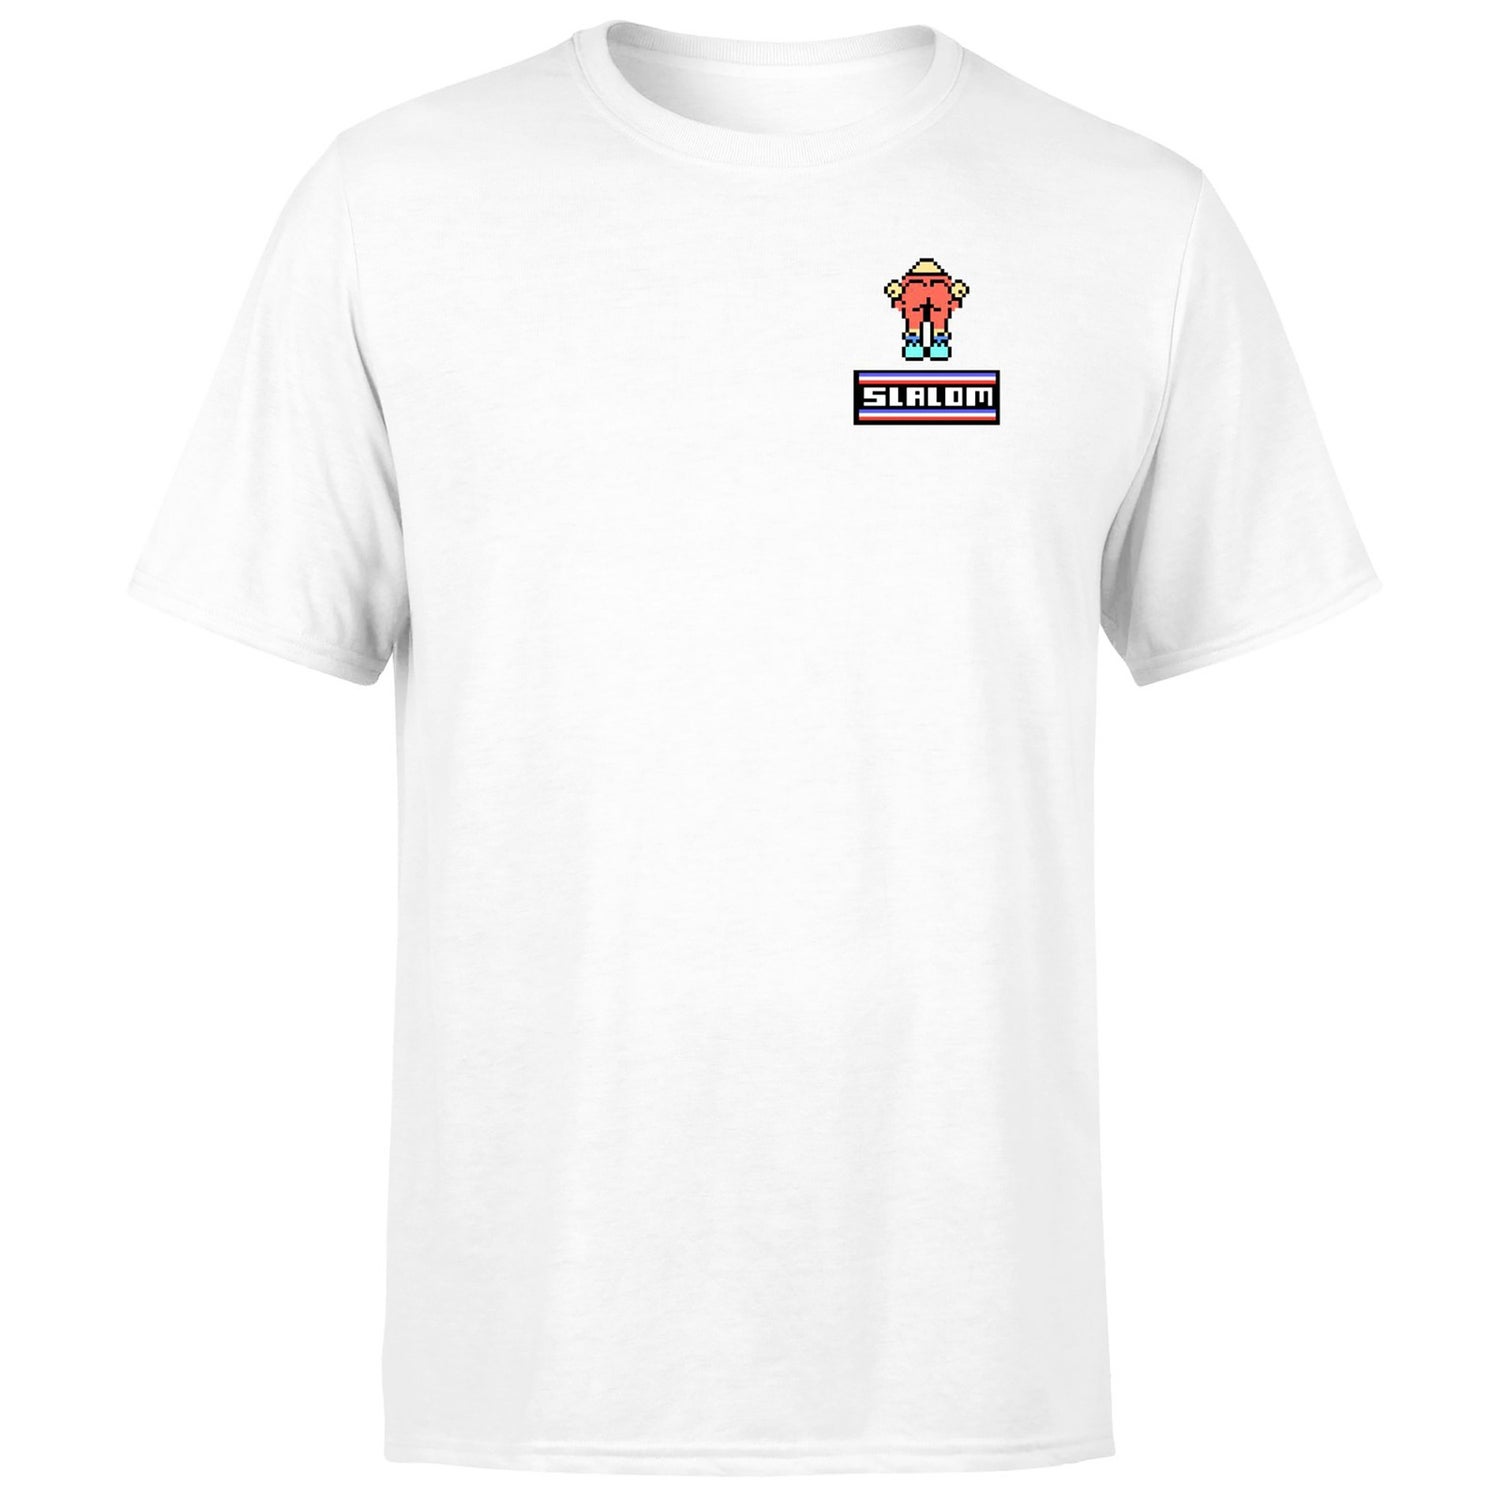 Rare All Stars Brand Slalom !!!white/red Ringer!!! Unisex T-Shirt - White